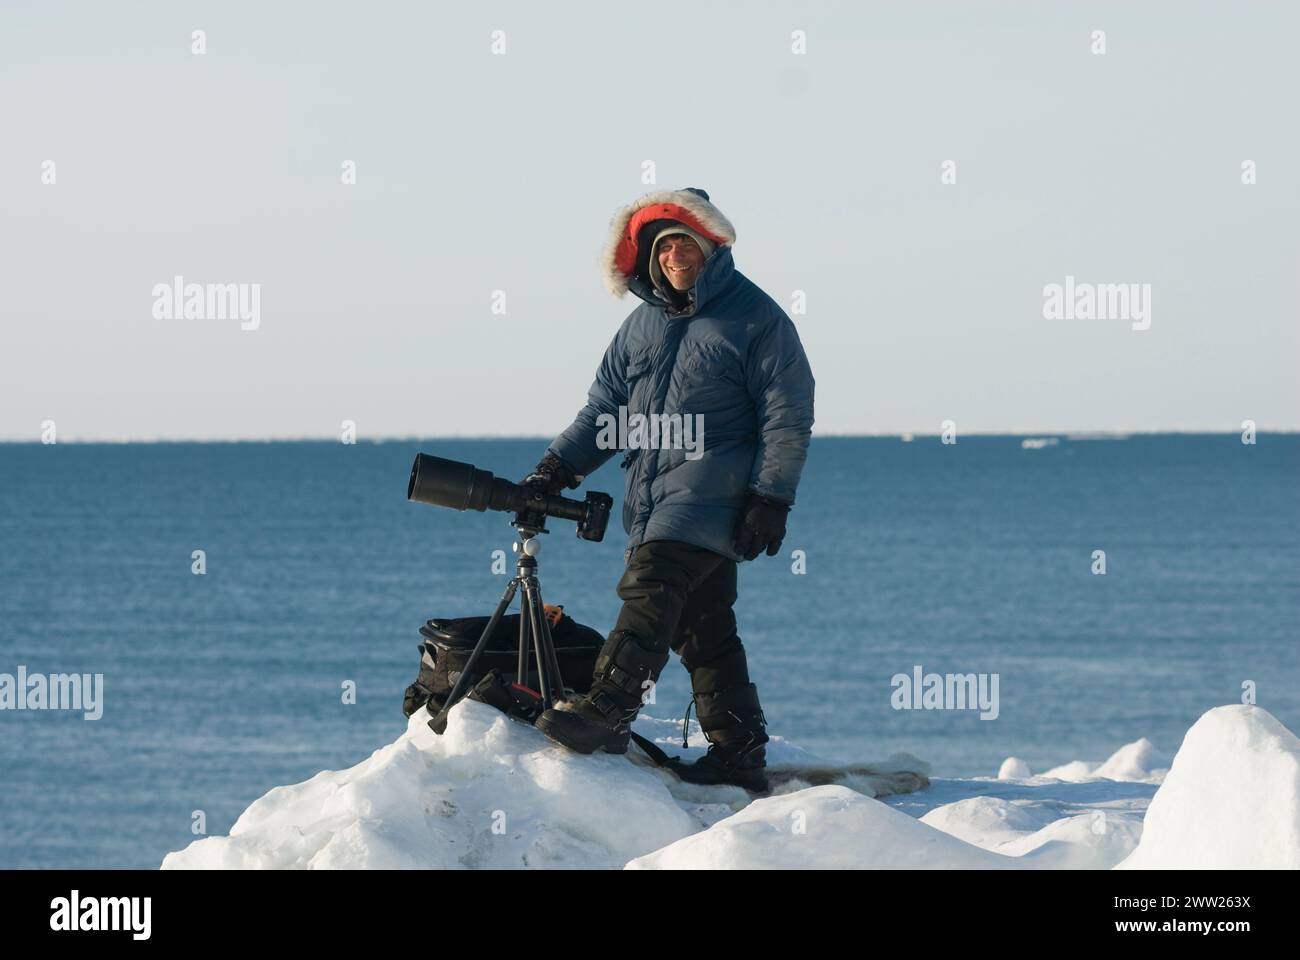 Photographe Steven Kazlowski avec appareil photo, trépied au bord d'une laisse ouverte dans la banquise, mer de Chukchi, au large de Barrow, Alaska Banque D'Images